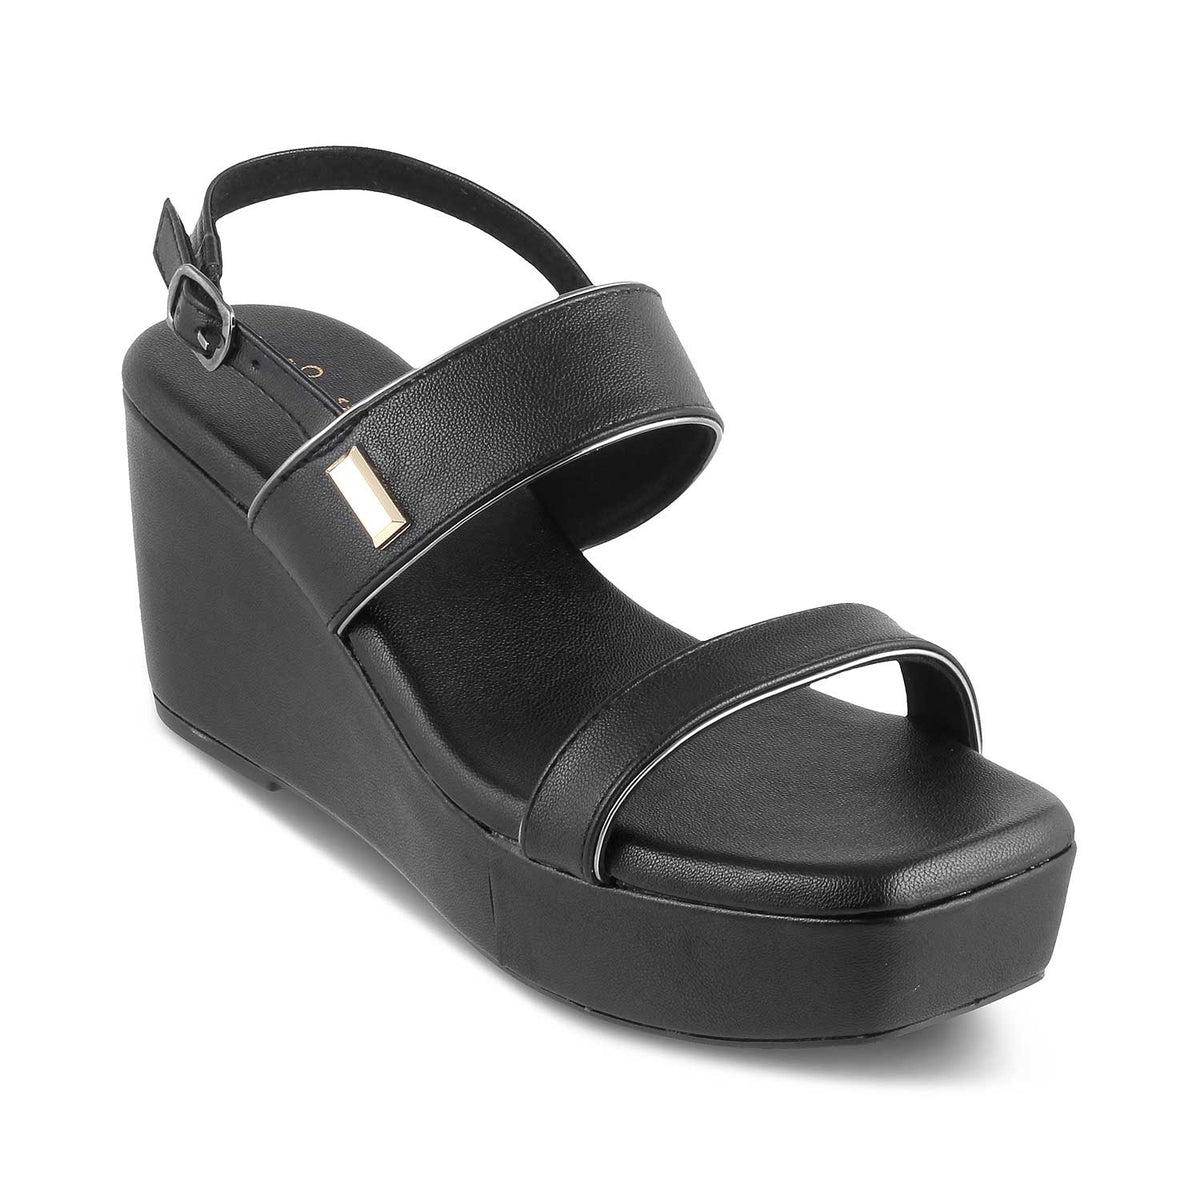 The Meteor Black Women's Dress Wedge Sandals Tresmode